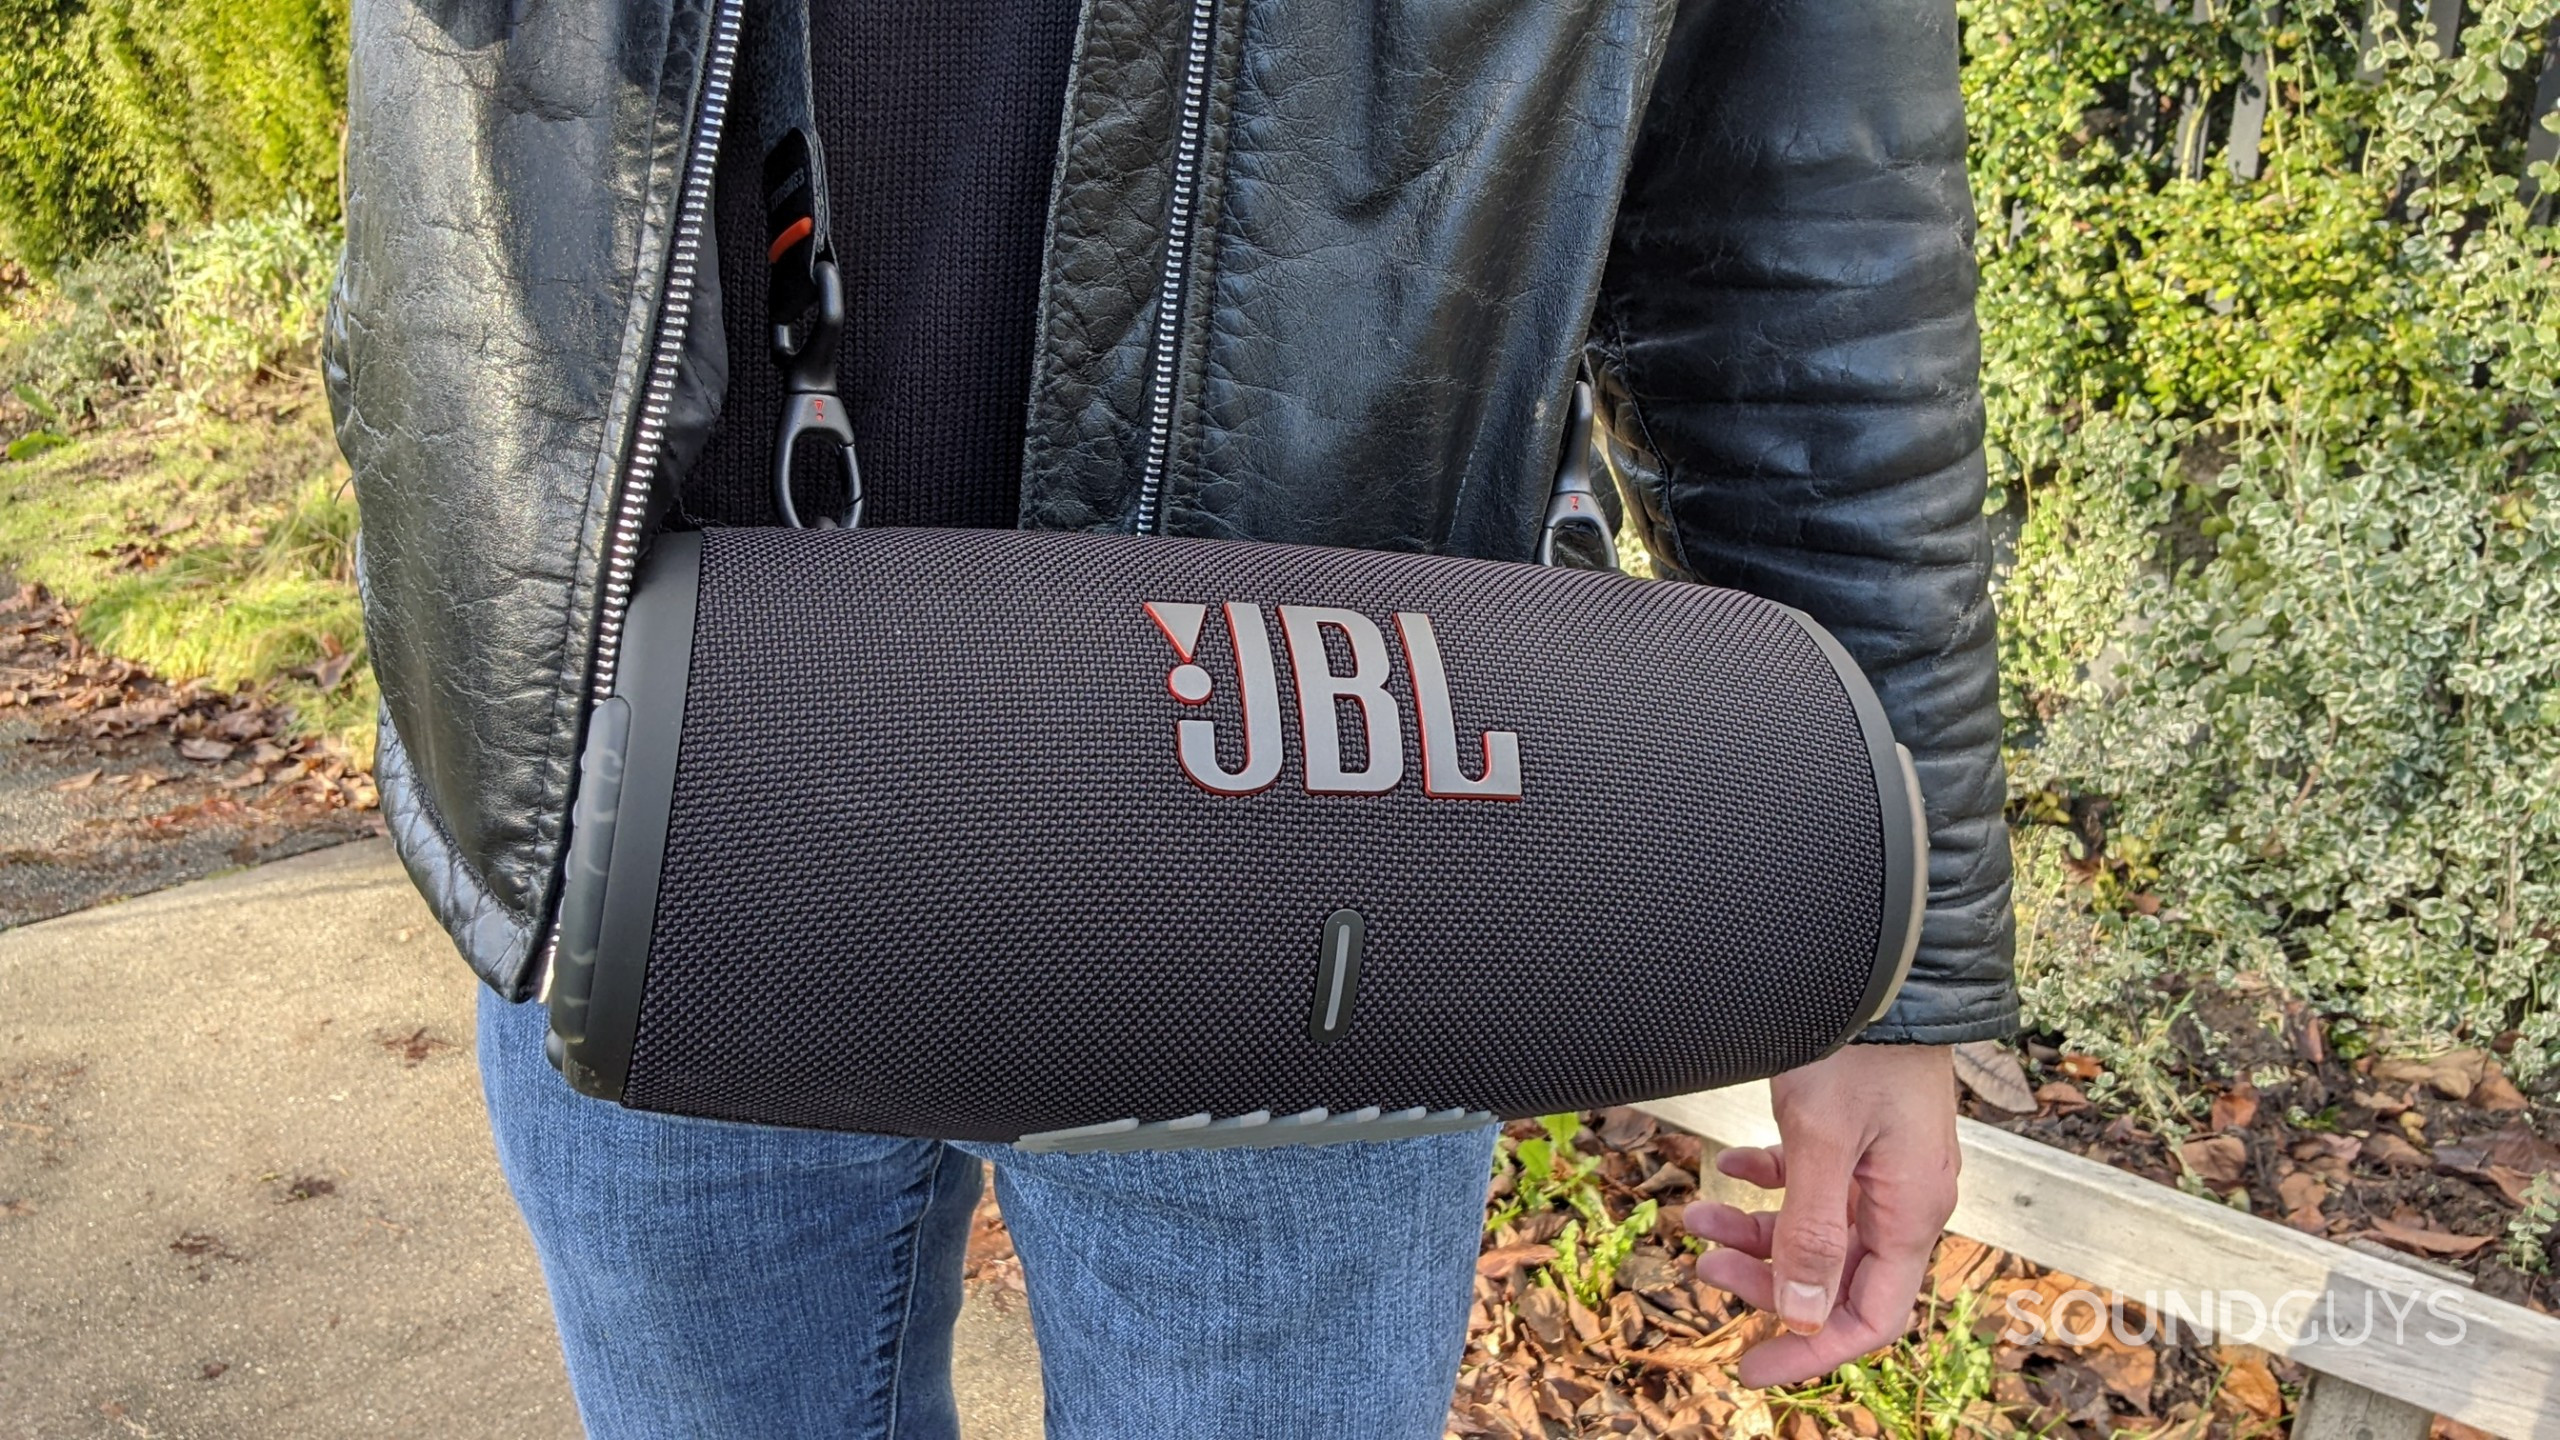 El altavoz Bluetooth JBL Xtreme 3 se lleva utilizando la correa de transporte adjunta en la parte delantera del torso de la persona.